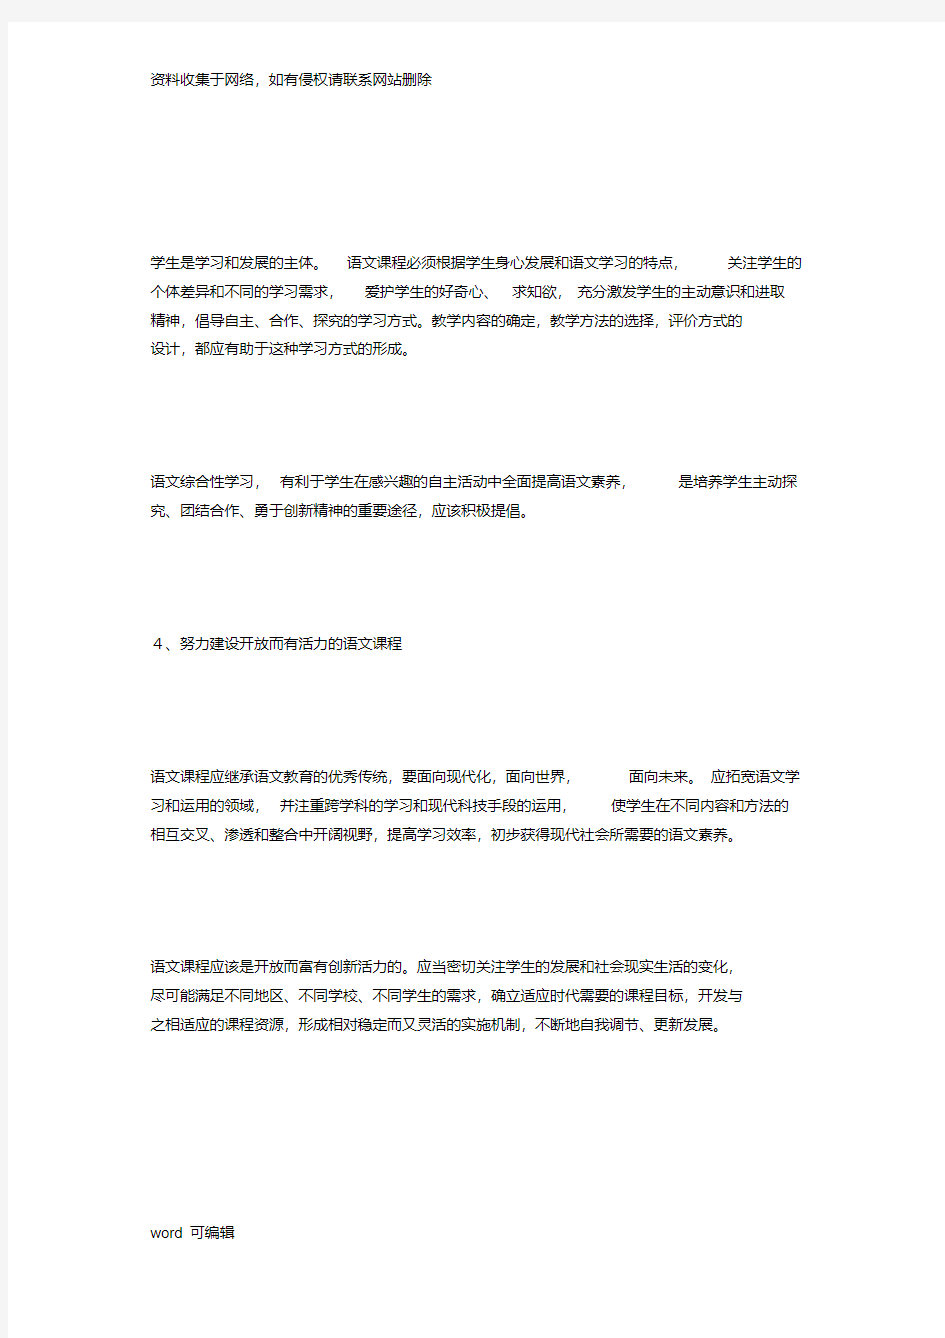 初中语文新课程的基本理念教学提纲